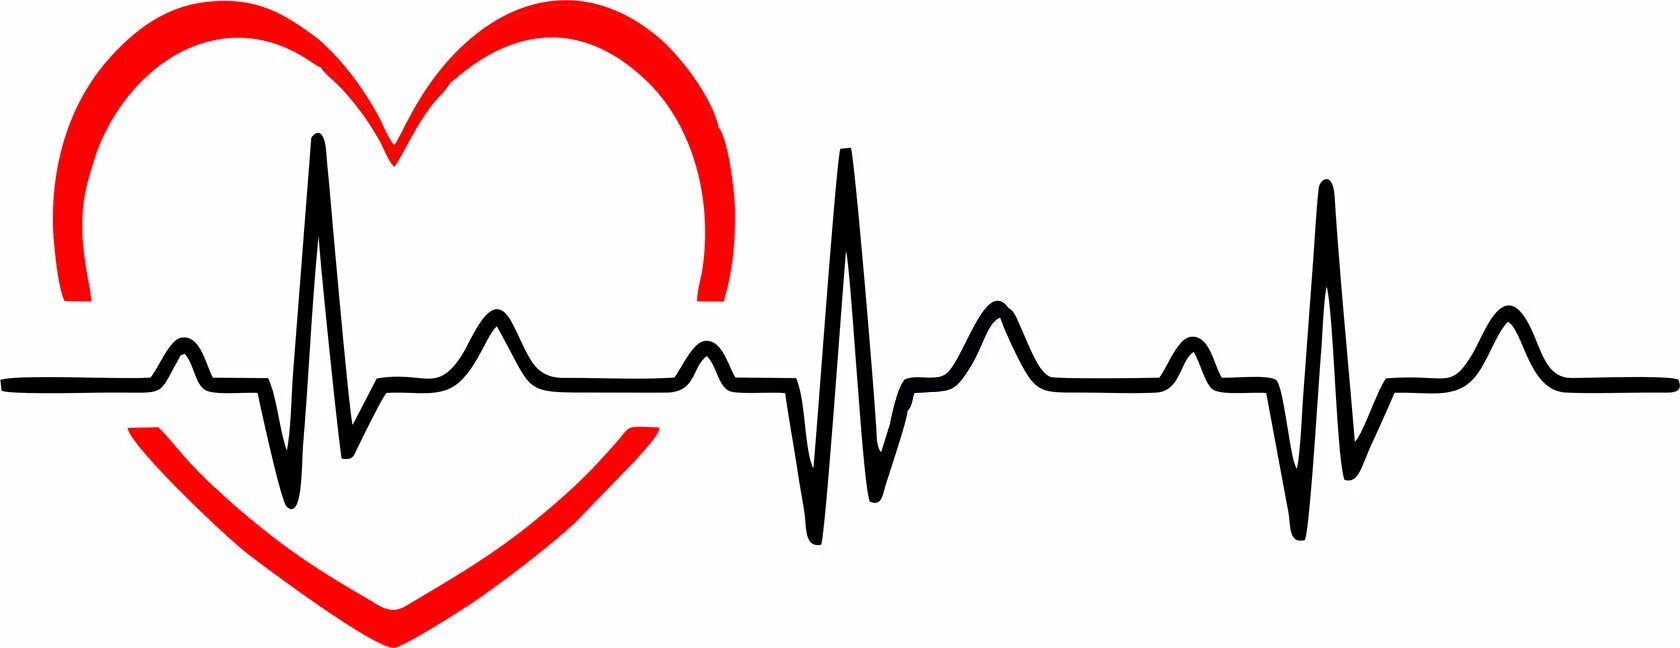 Сердцебиения 23. Пульс сердца. Кардиограмма сердца. Сердце с линией кардиограммы. Кардиограмма рисунок.